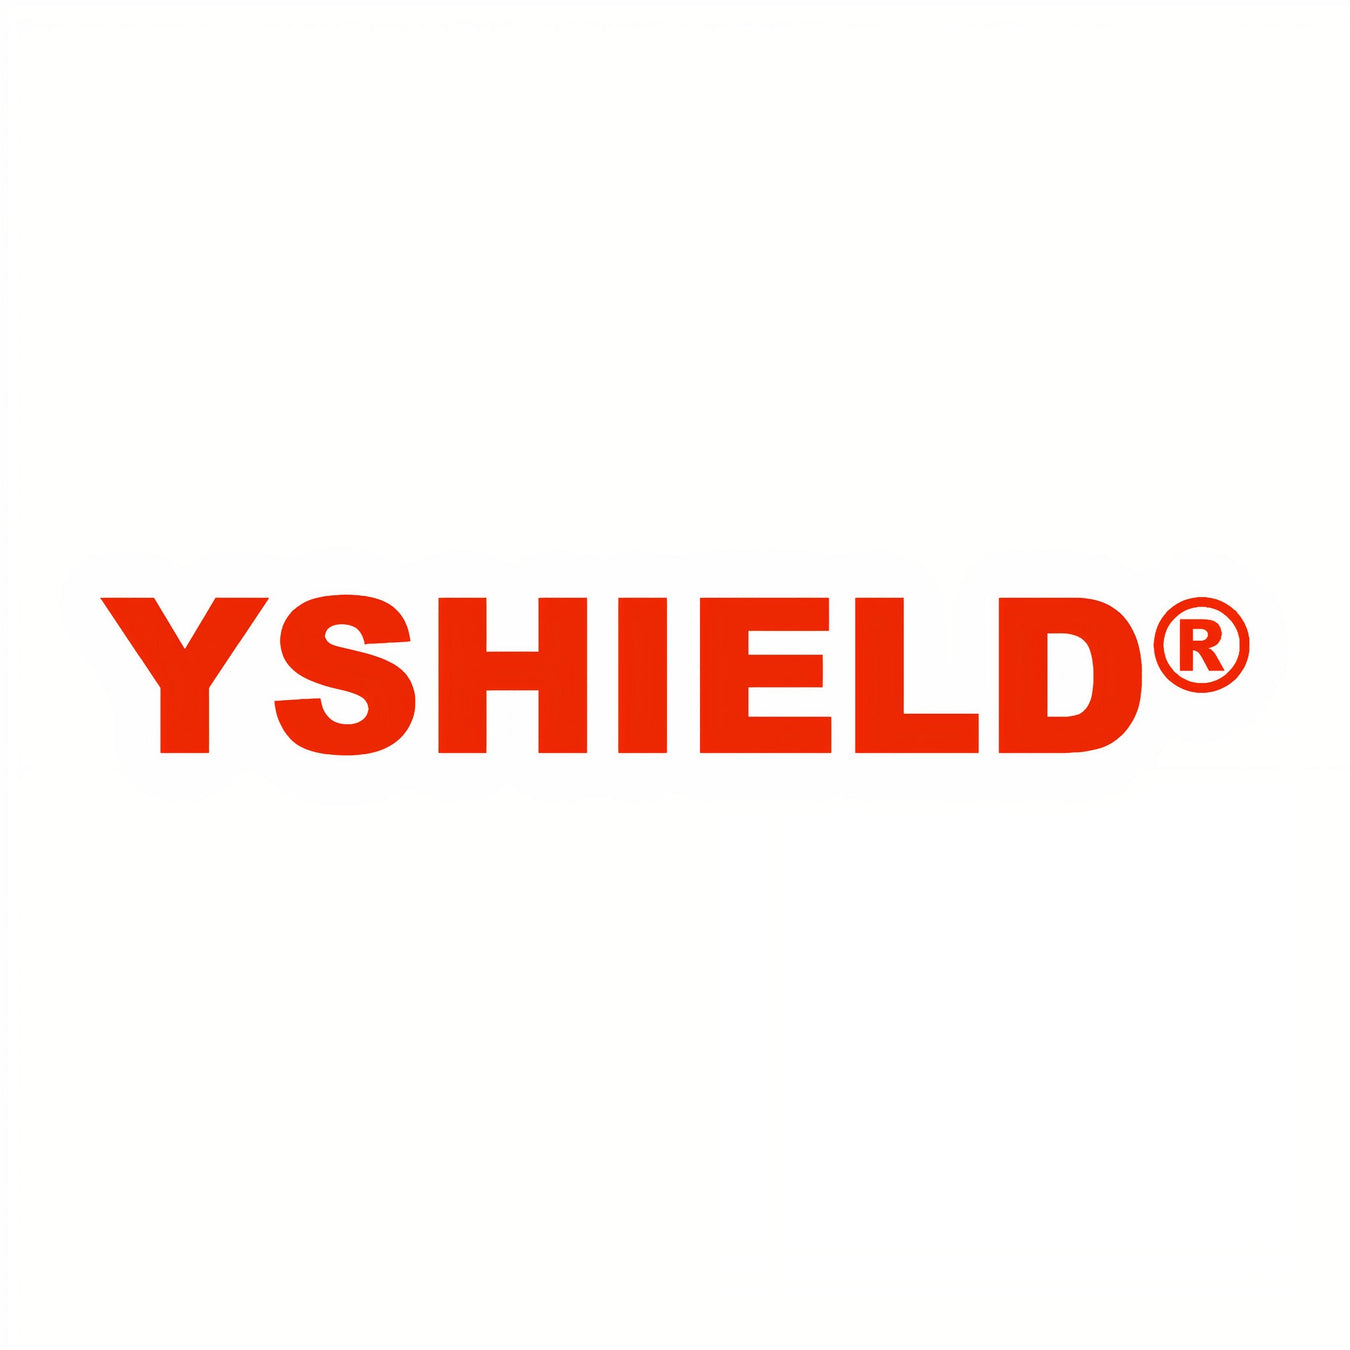 YSHIELD brand logo